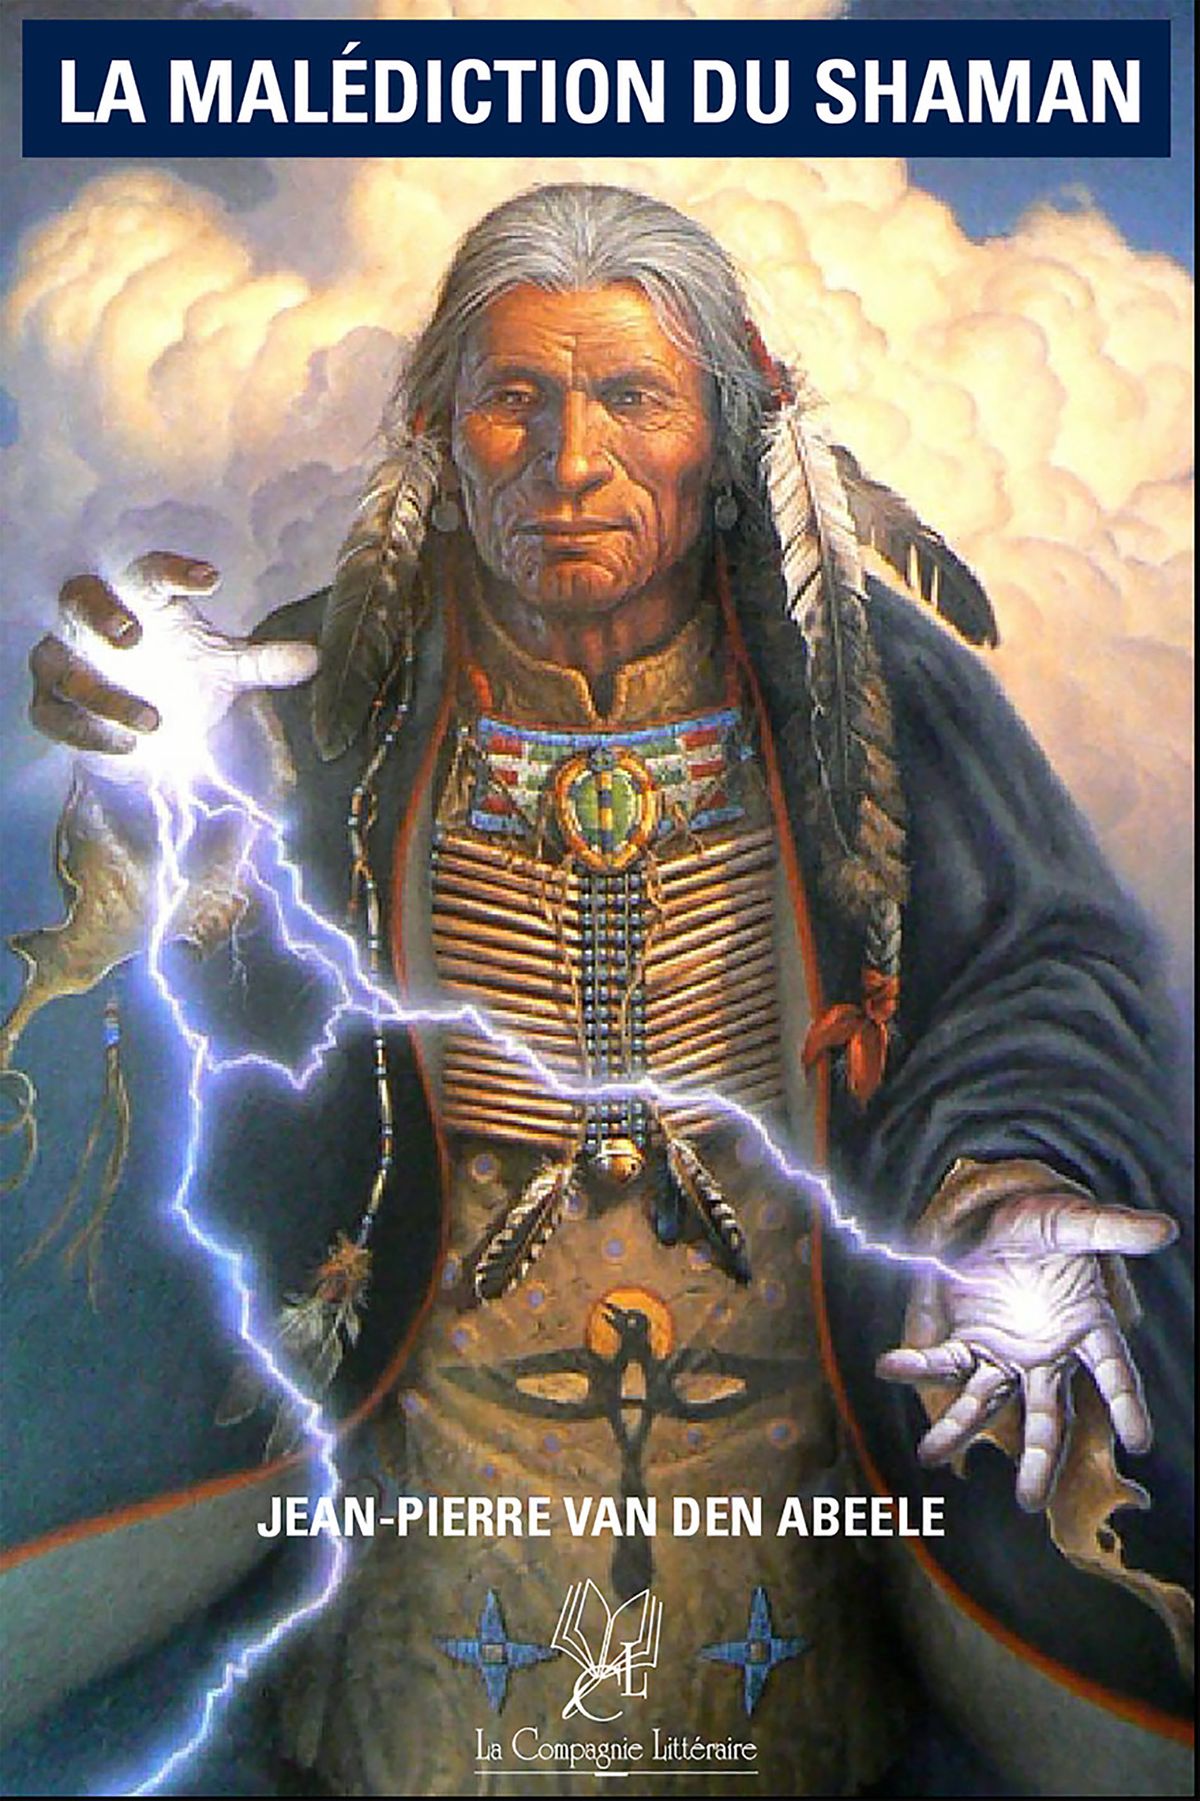 Обмен с богом шаман. Индеец Дон Хуан Матус. Индейский шаман Дон Хуан. Карлос Кастанеда Дон Хуан Матус.